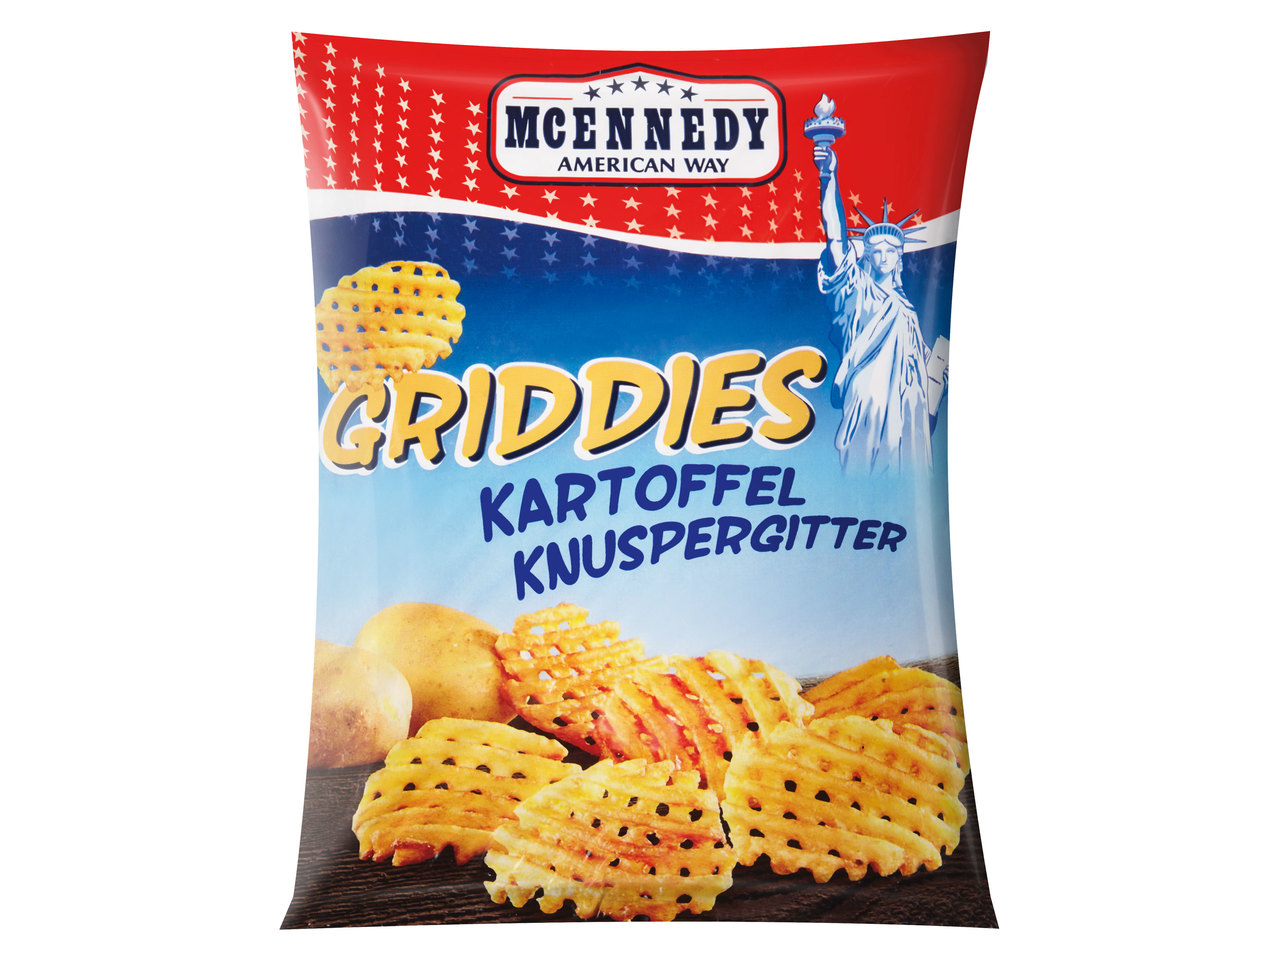 MCENNEDY Griddies Kartoffel Knuspergitter